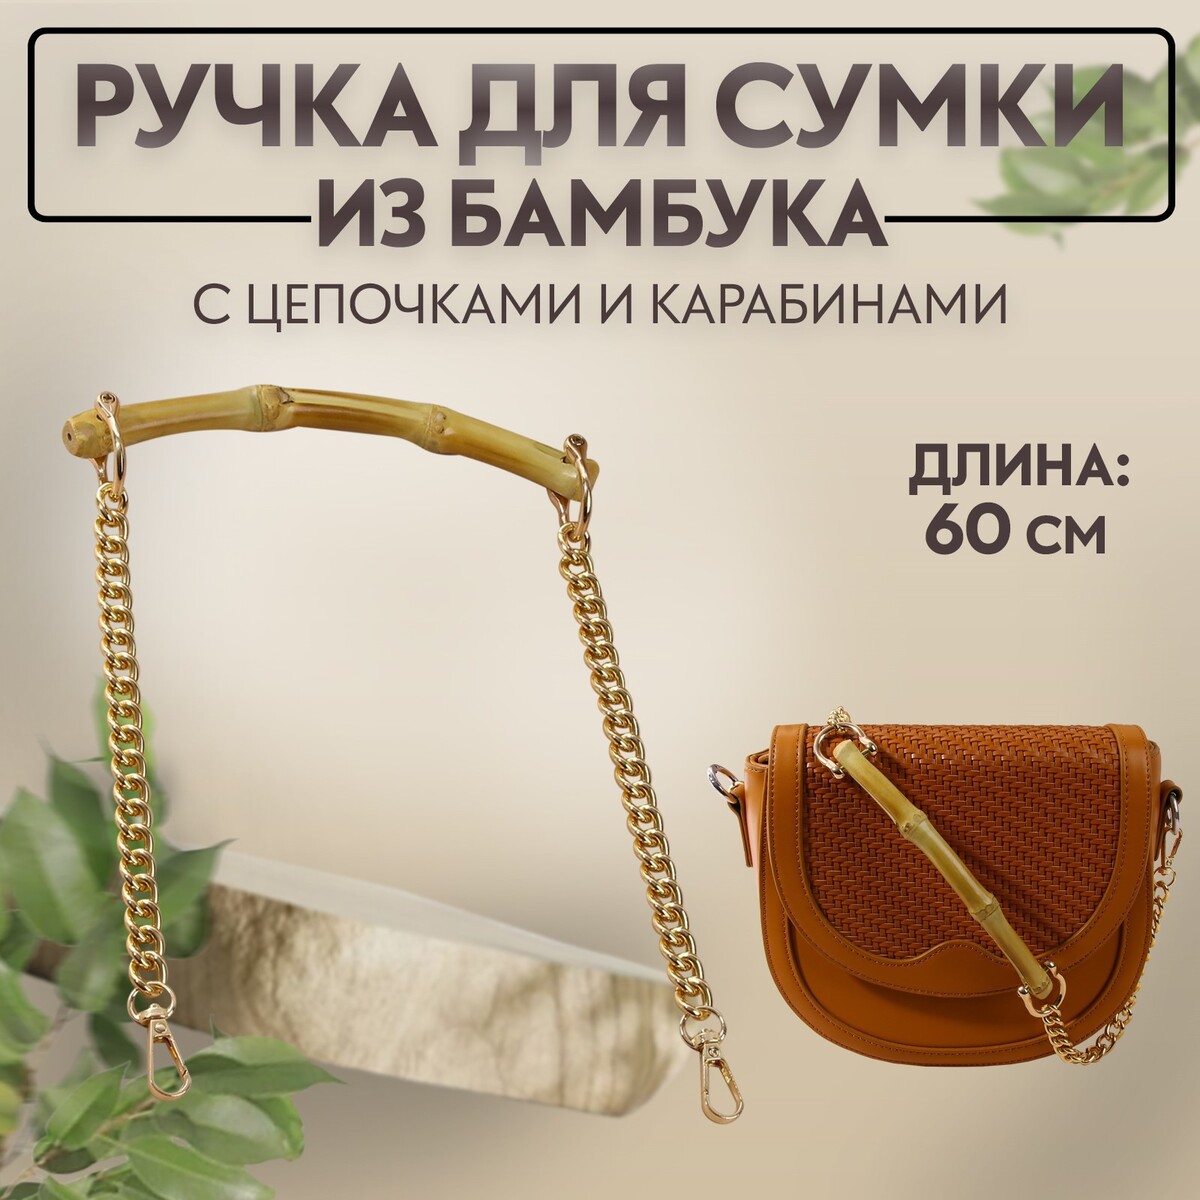 Ручка для сумки, бамбук, с цепочками и карабинами, 60 см, цвет золотой ручка для сумки с цепочками и карабинами 120 × 1 8 см